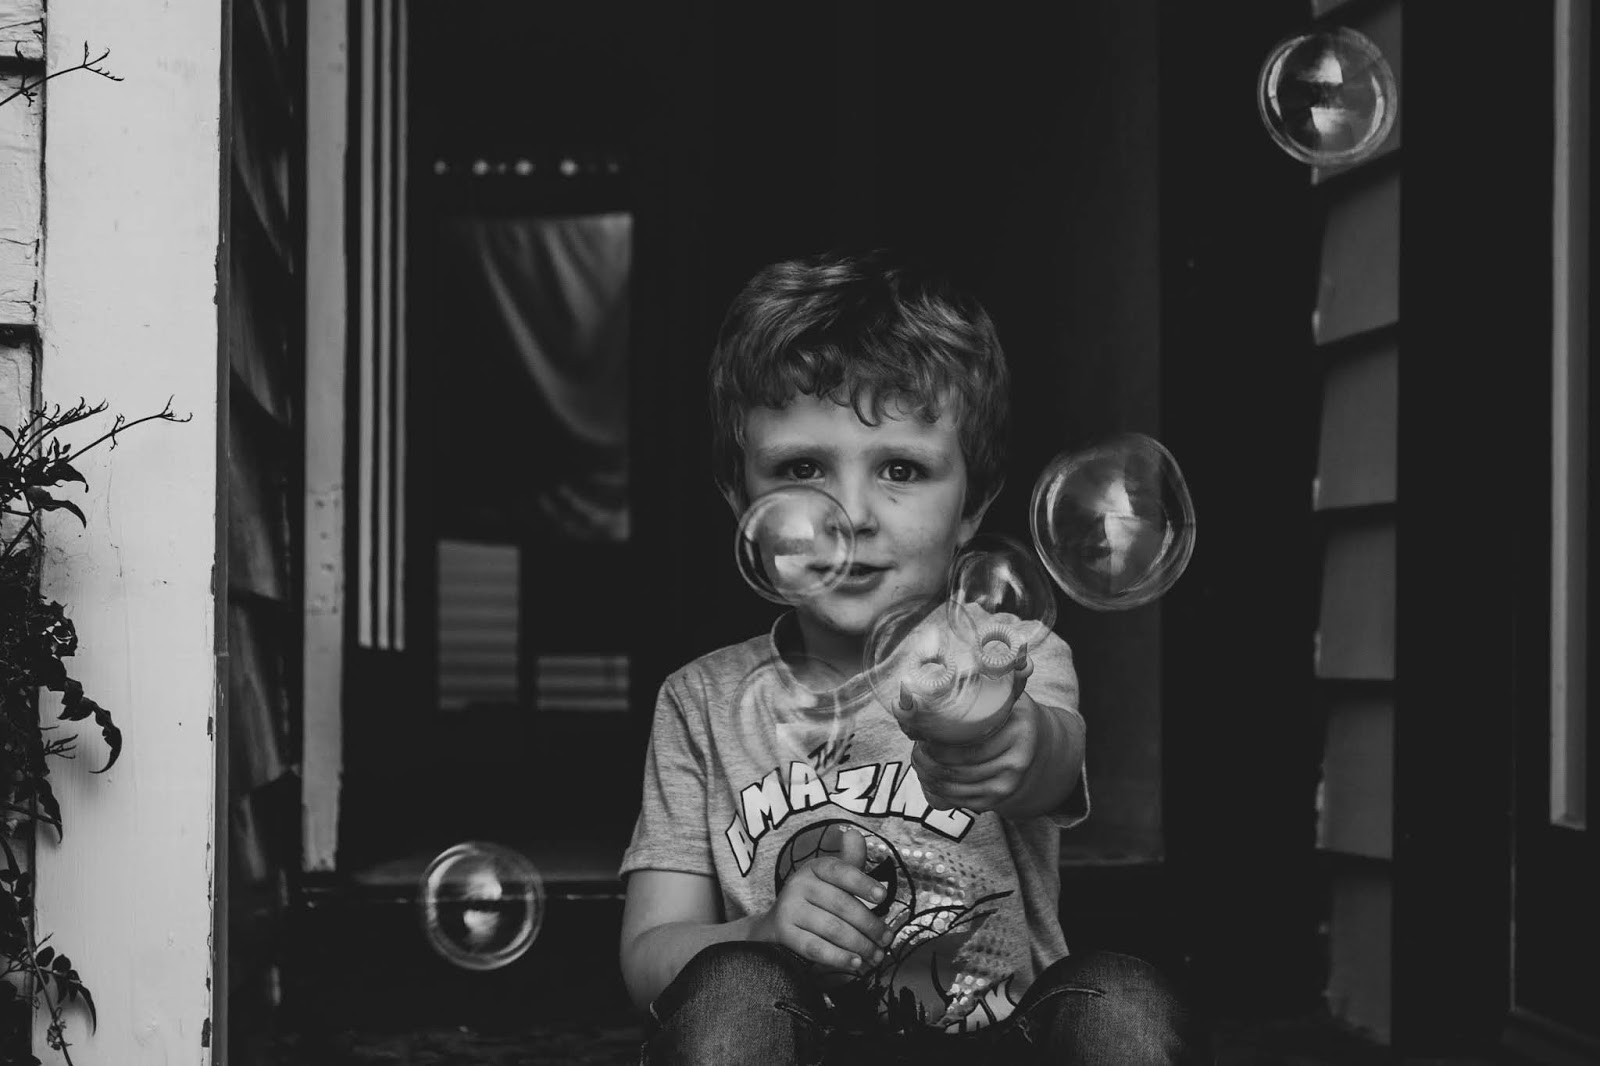 Свободен мальчик. Пузырь счастья. Фото с мыльными пузырями дома грудничок. Мальчик с папироской. Severe Autism.